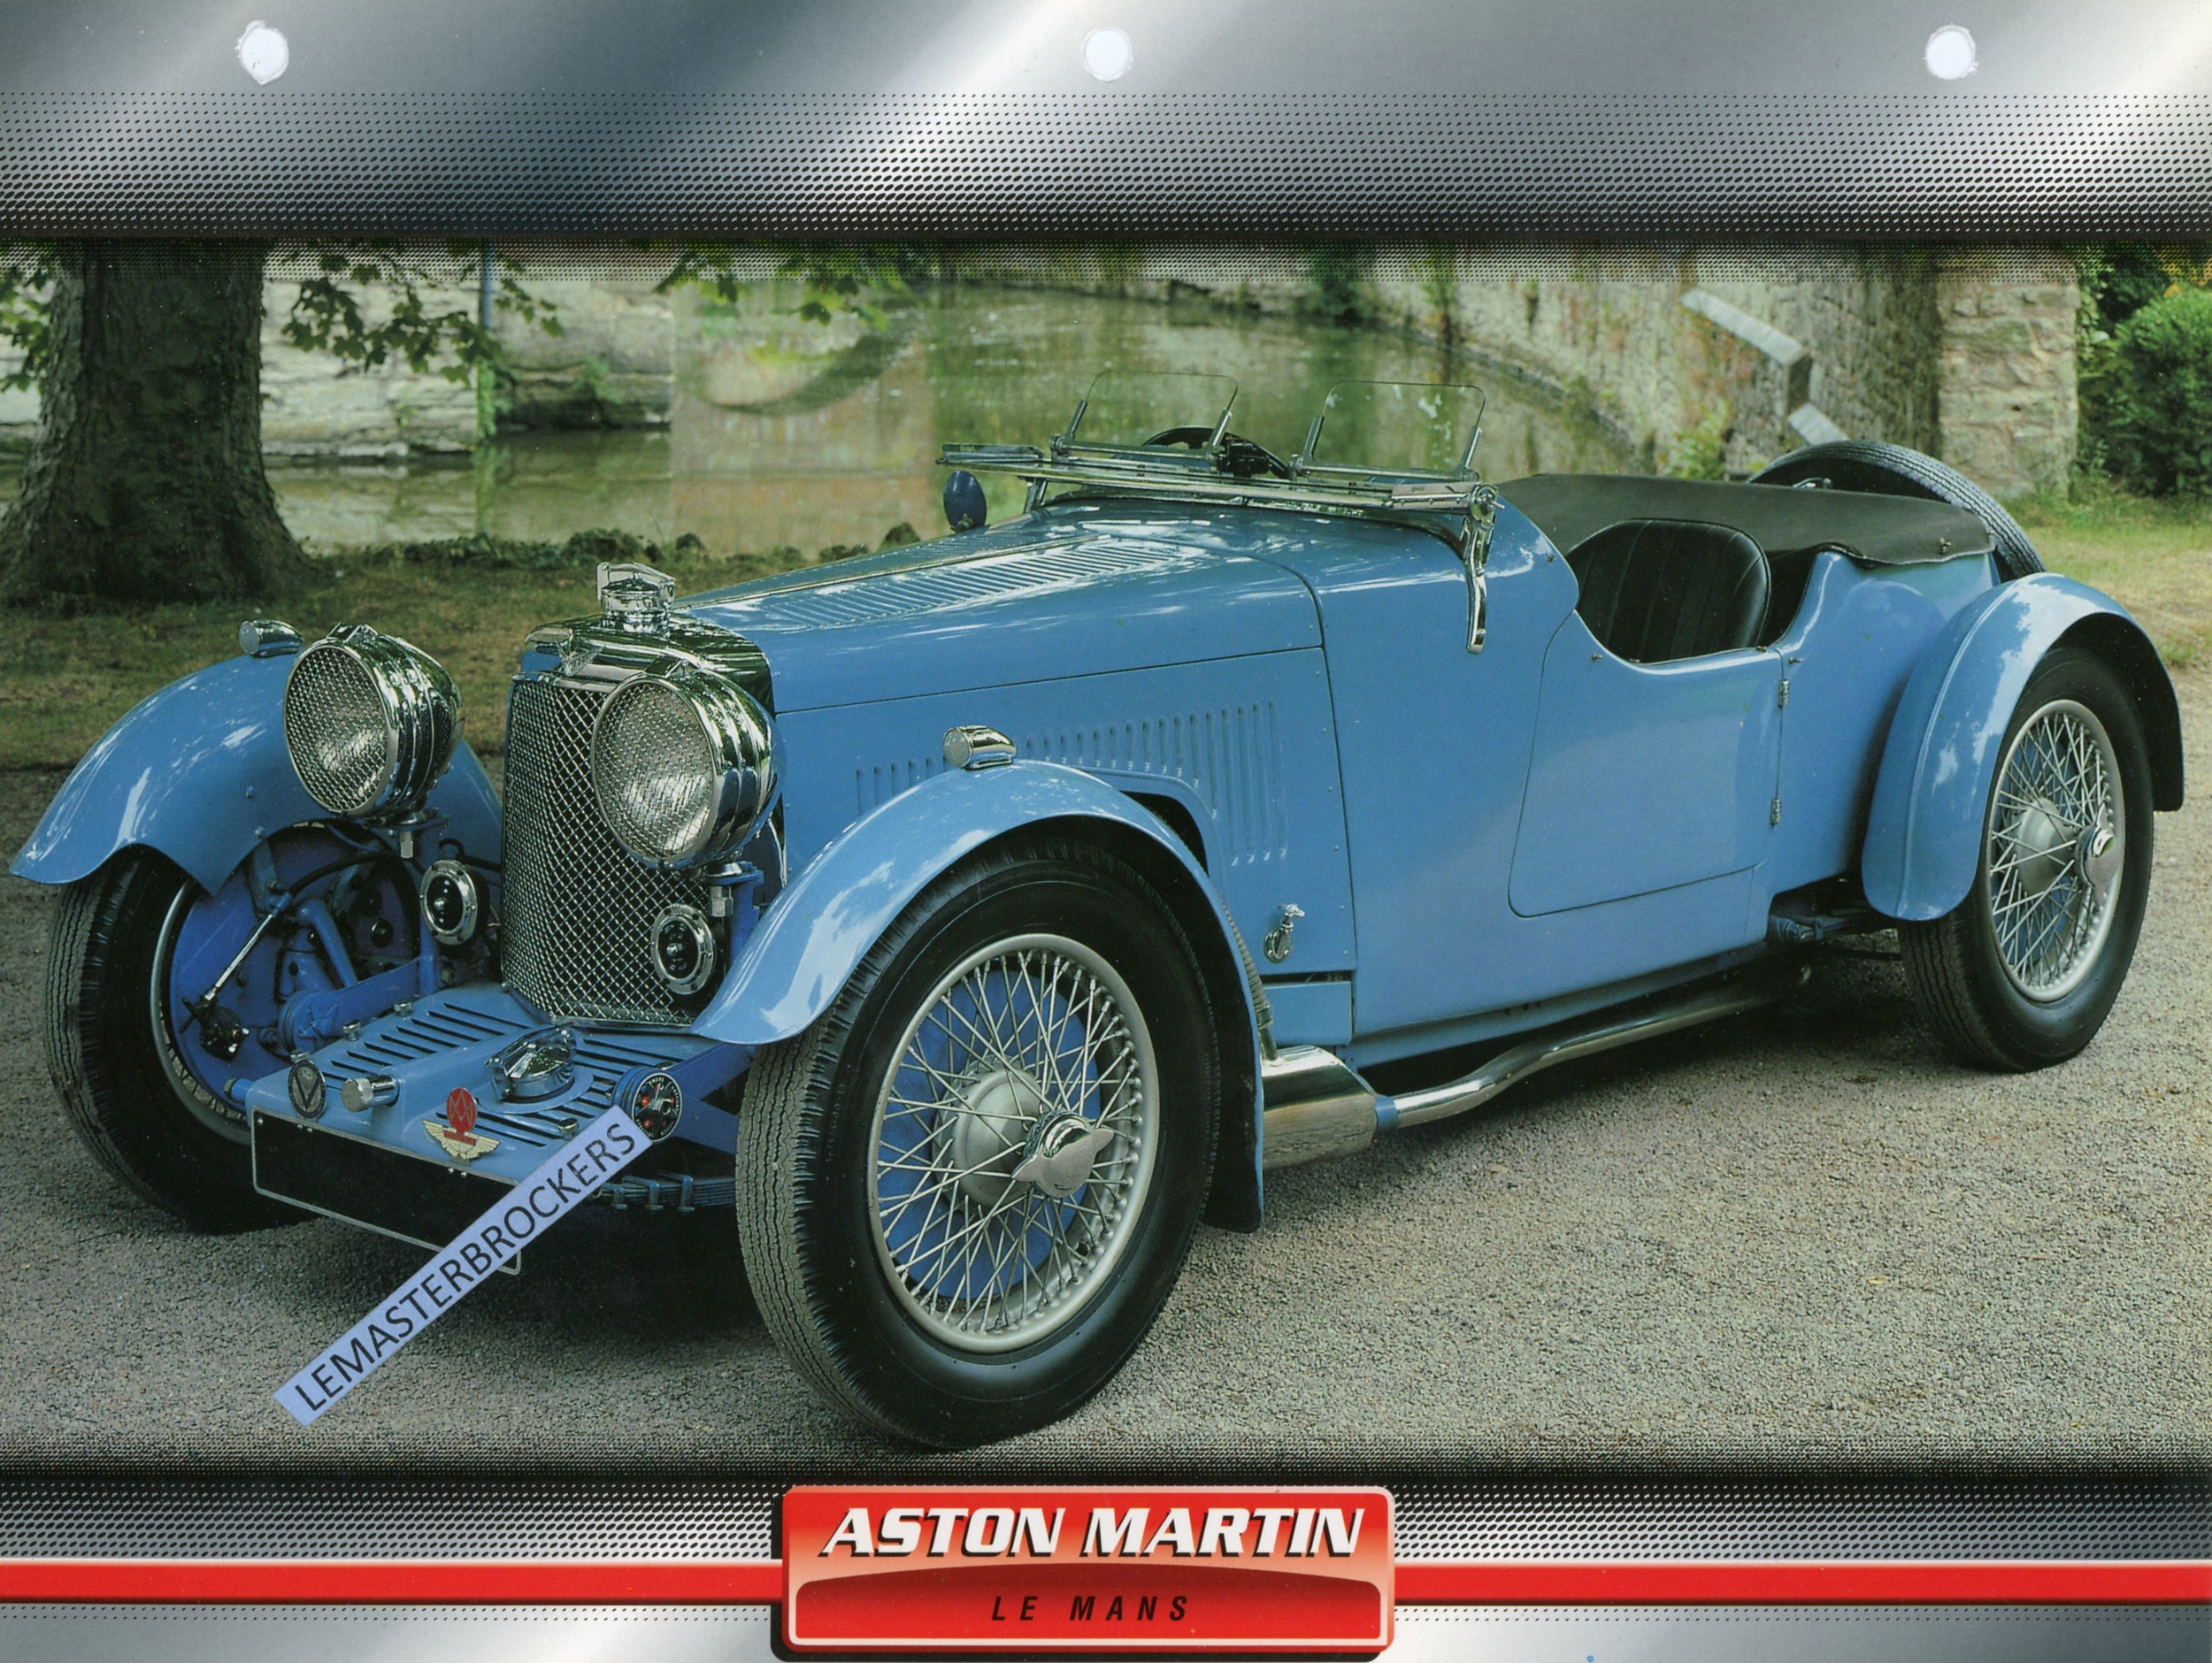 ASTON-MARTIN-LEMANS-1933-FICHE-AUTO-TECHNIQUE-LEMASTERBROCKERS-FICHE-ATLAS